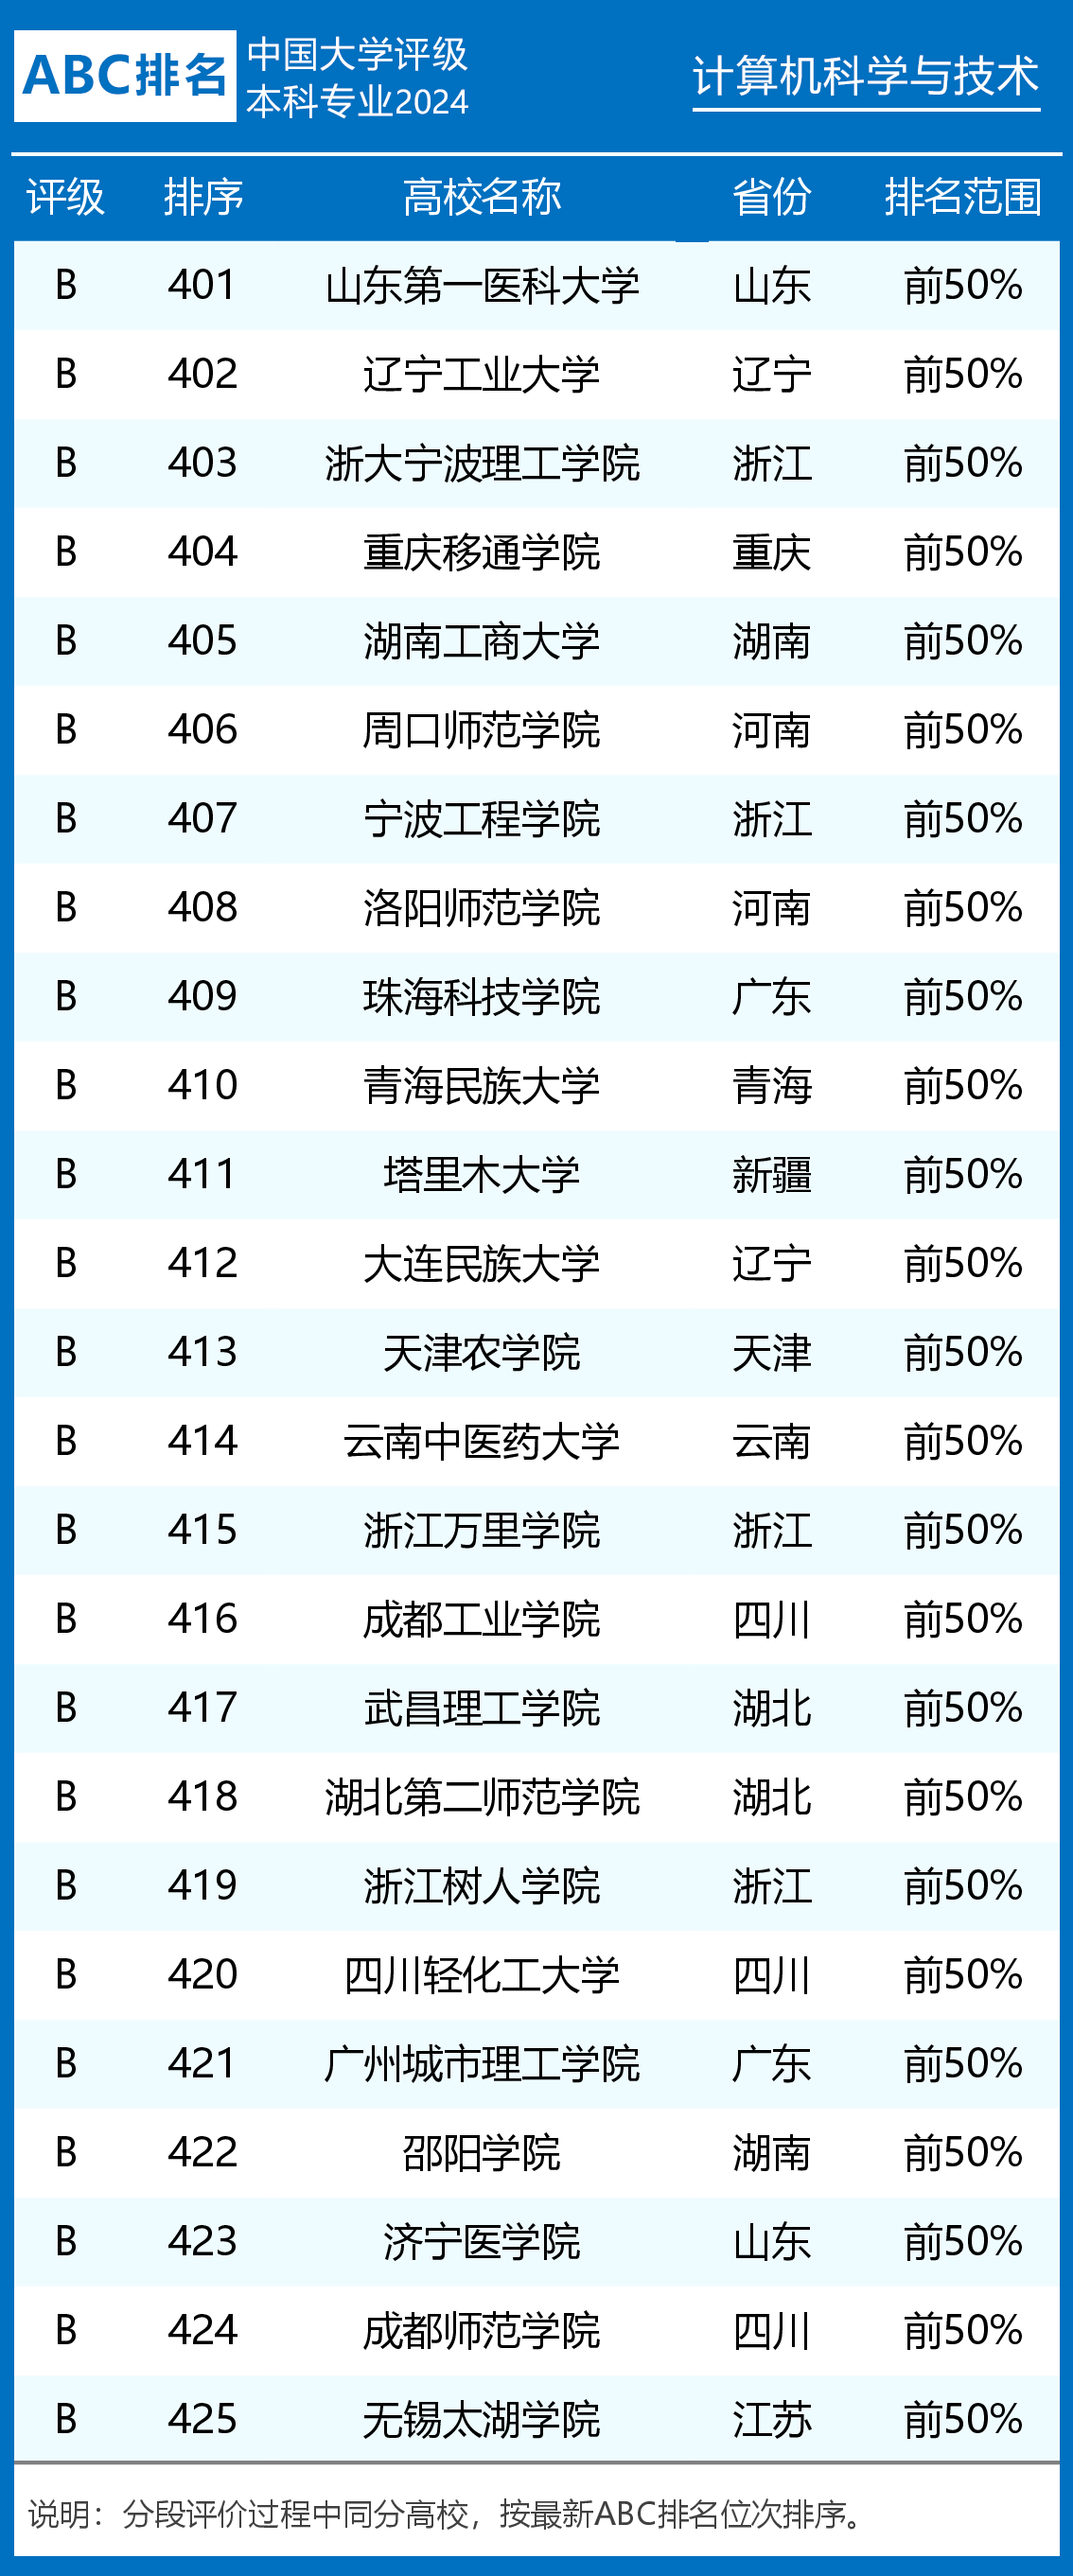 2024年计算机科学与技术专业大学排名及评级:清华大学,北京大学前二